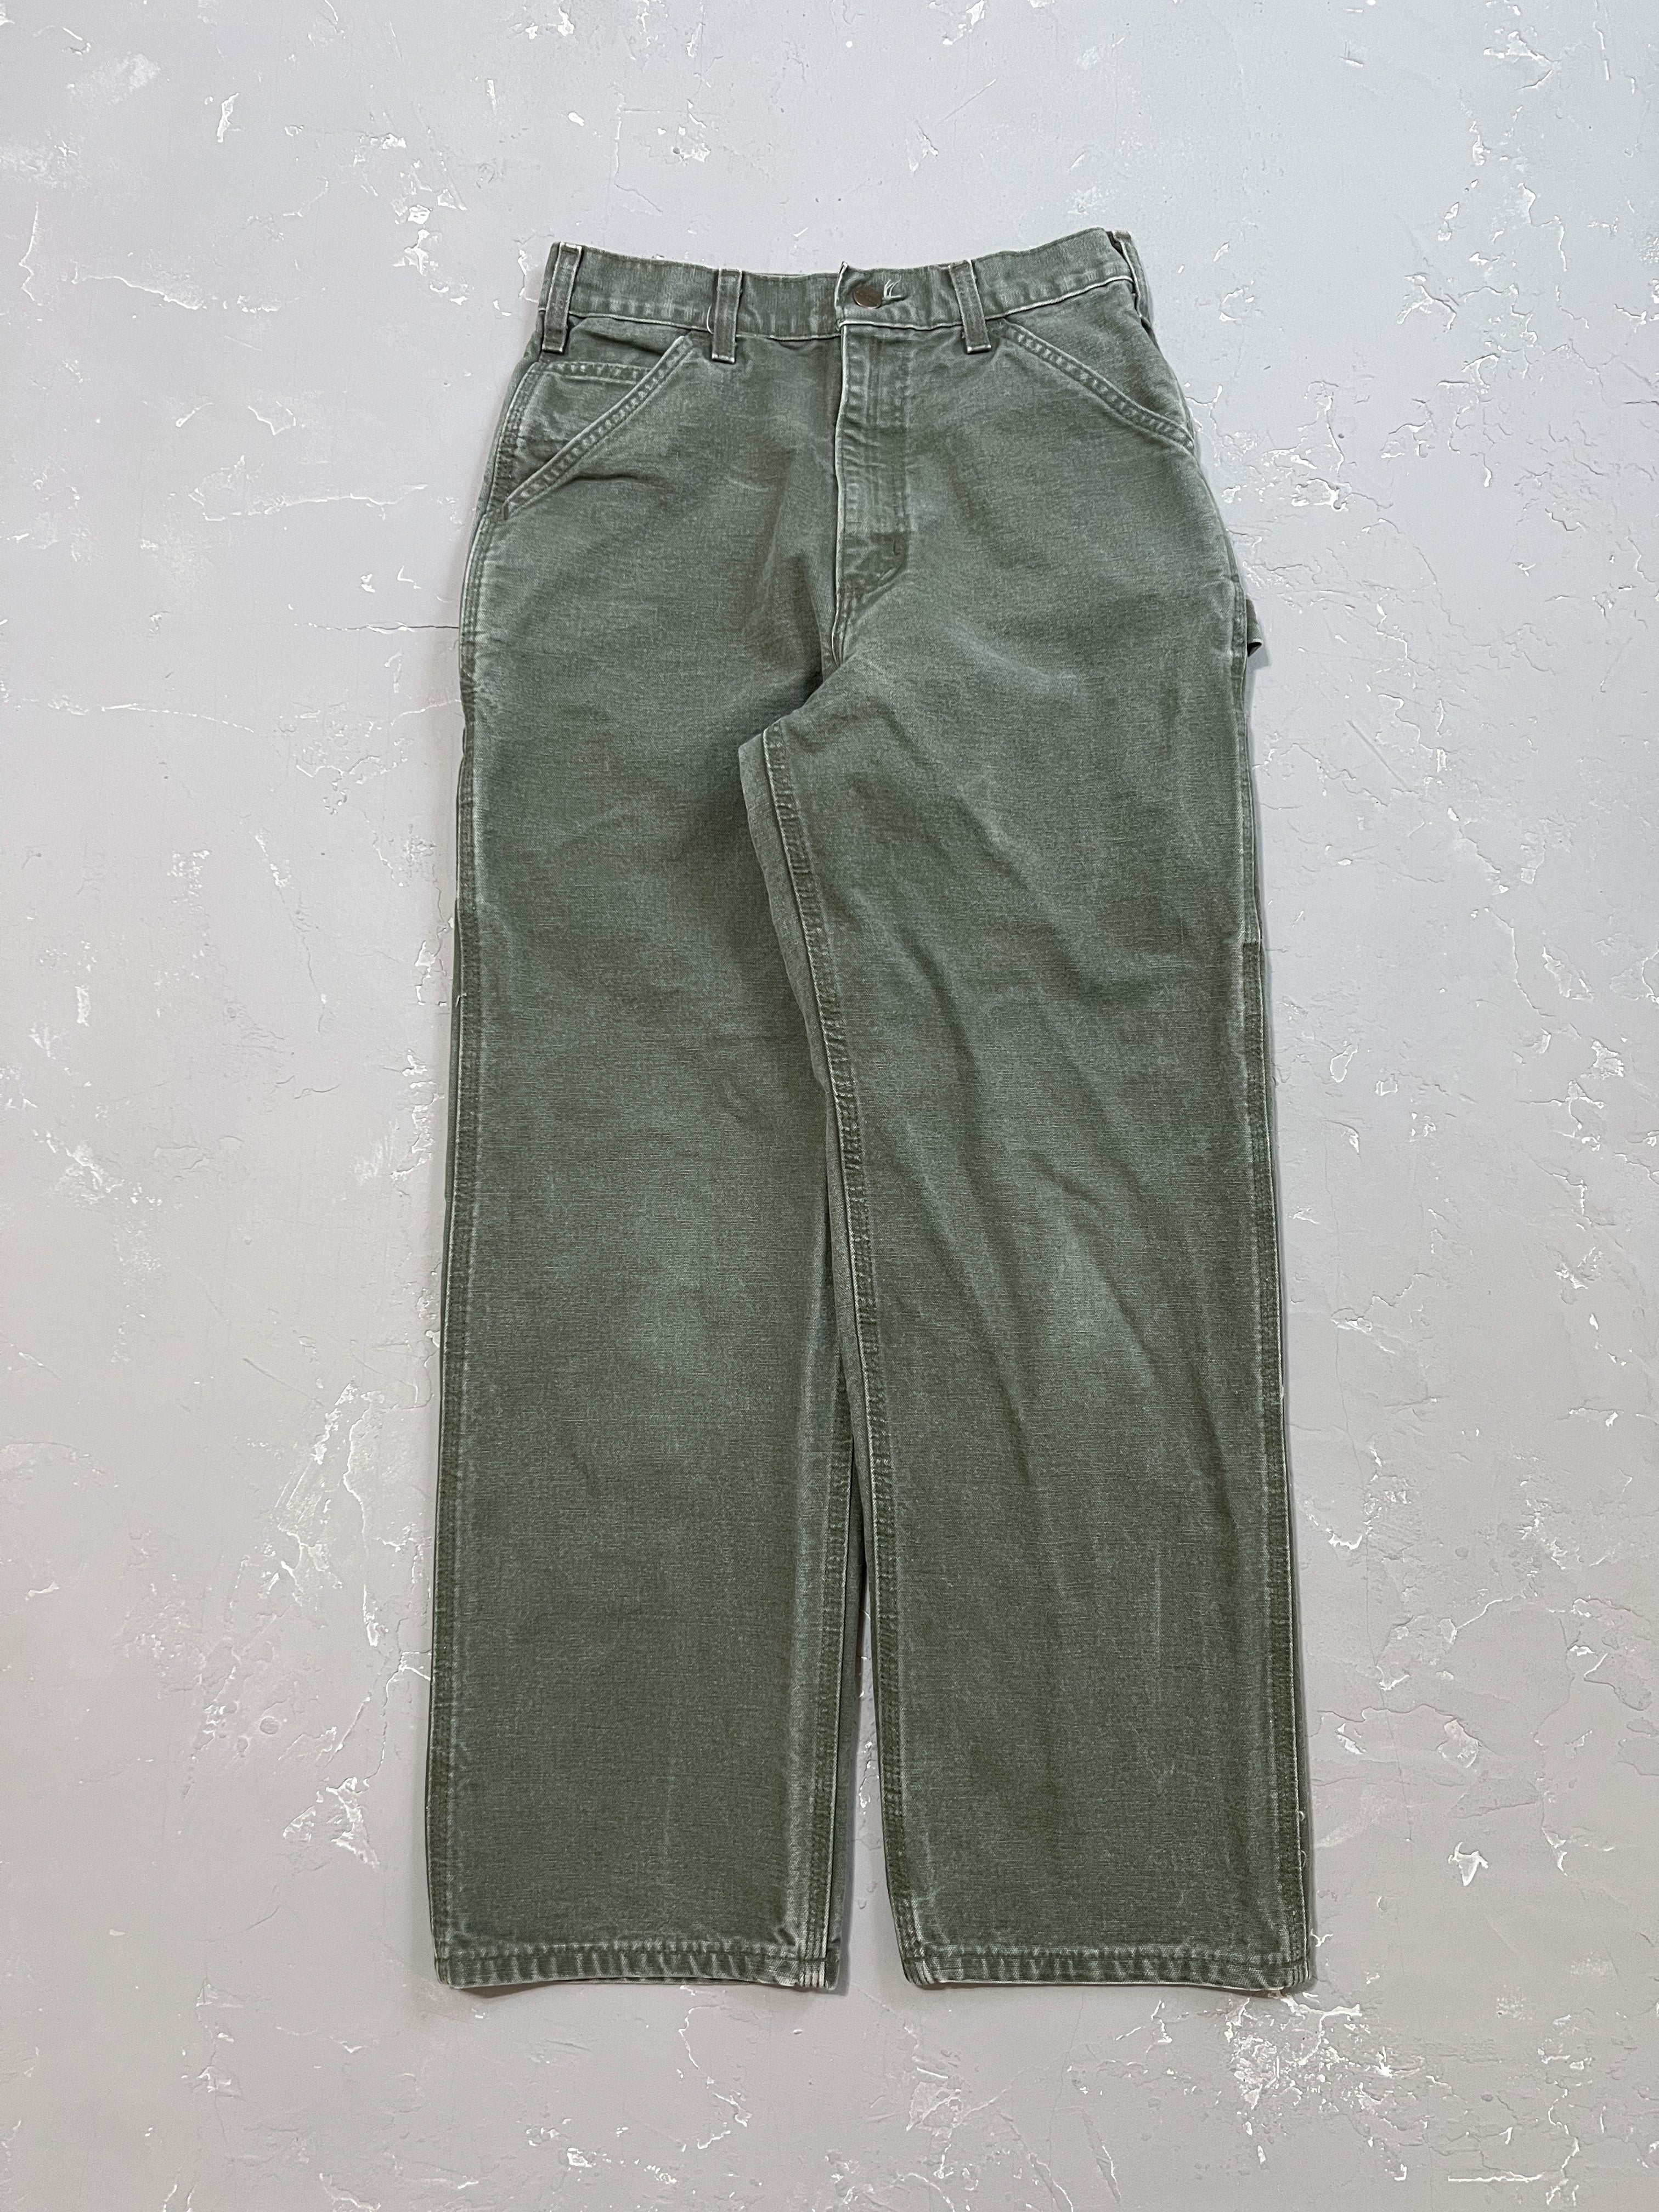 Carhartt Moss Green Carpenter Pants [27 x 30]